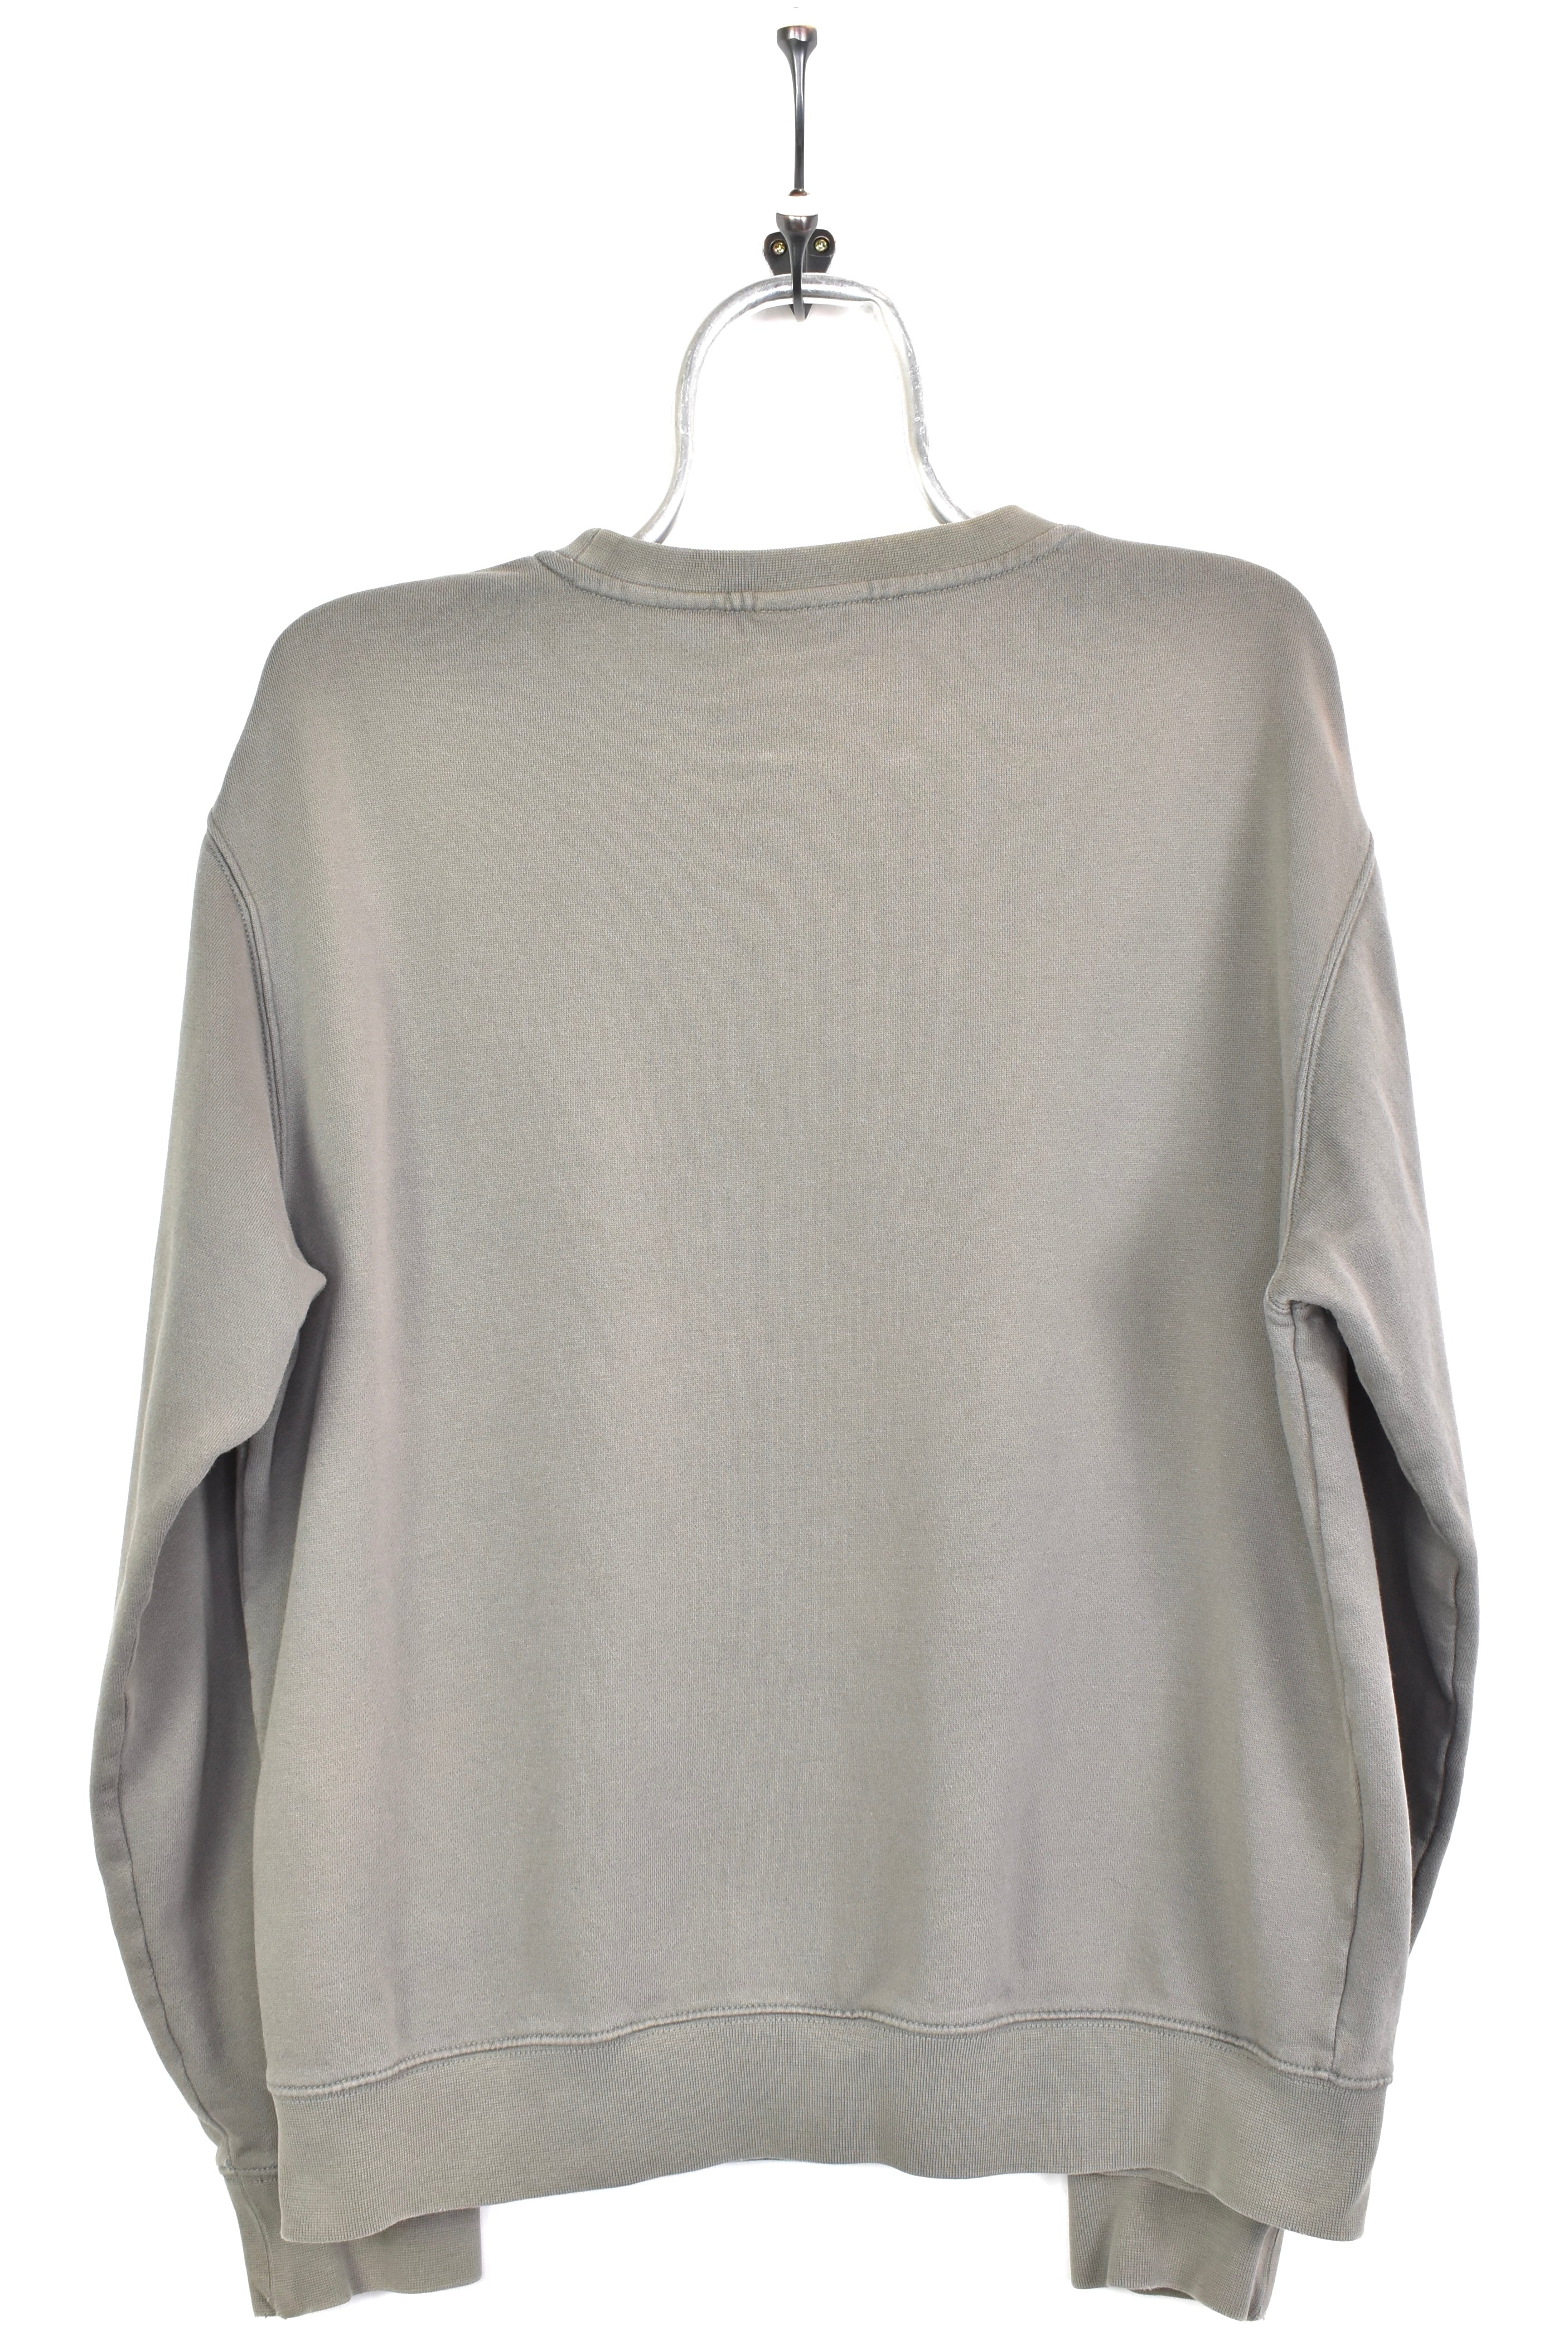 Vintage fila embroidered grey sweatshirt | medium FILA